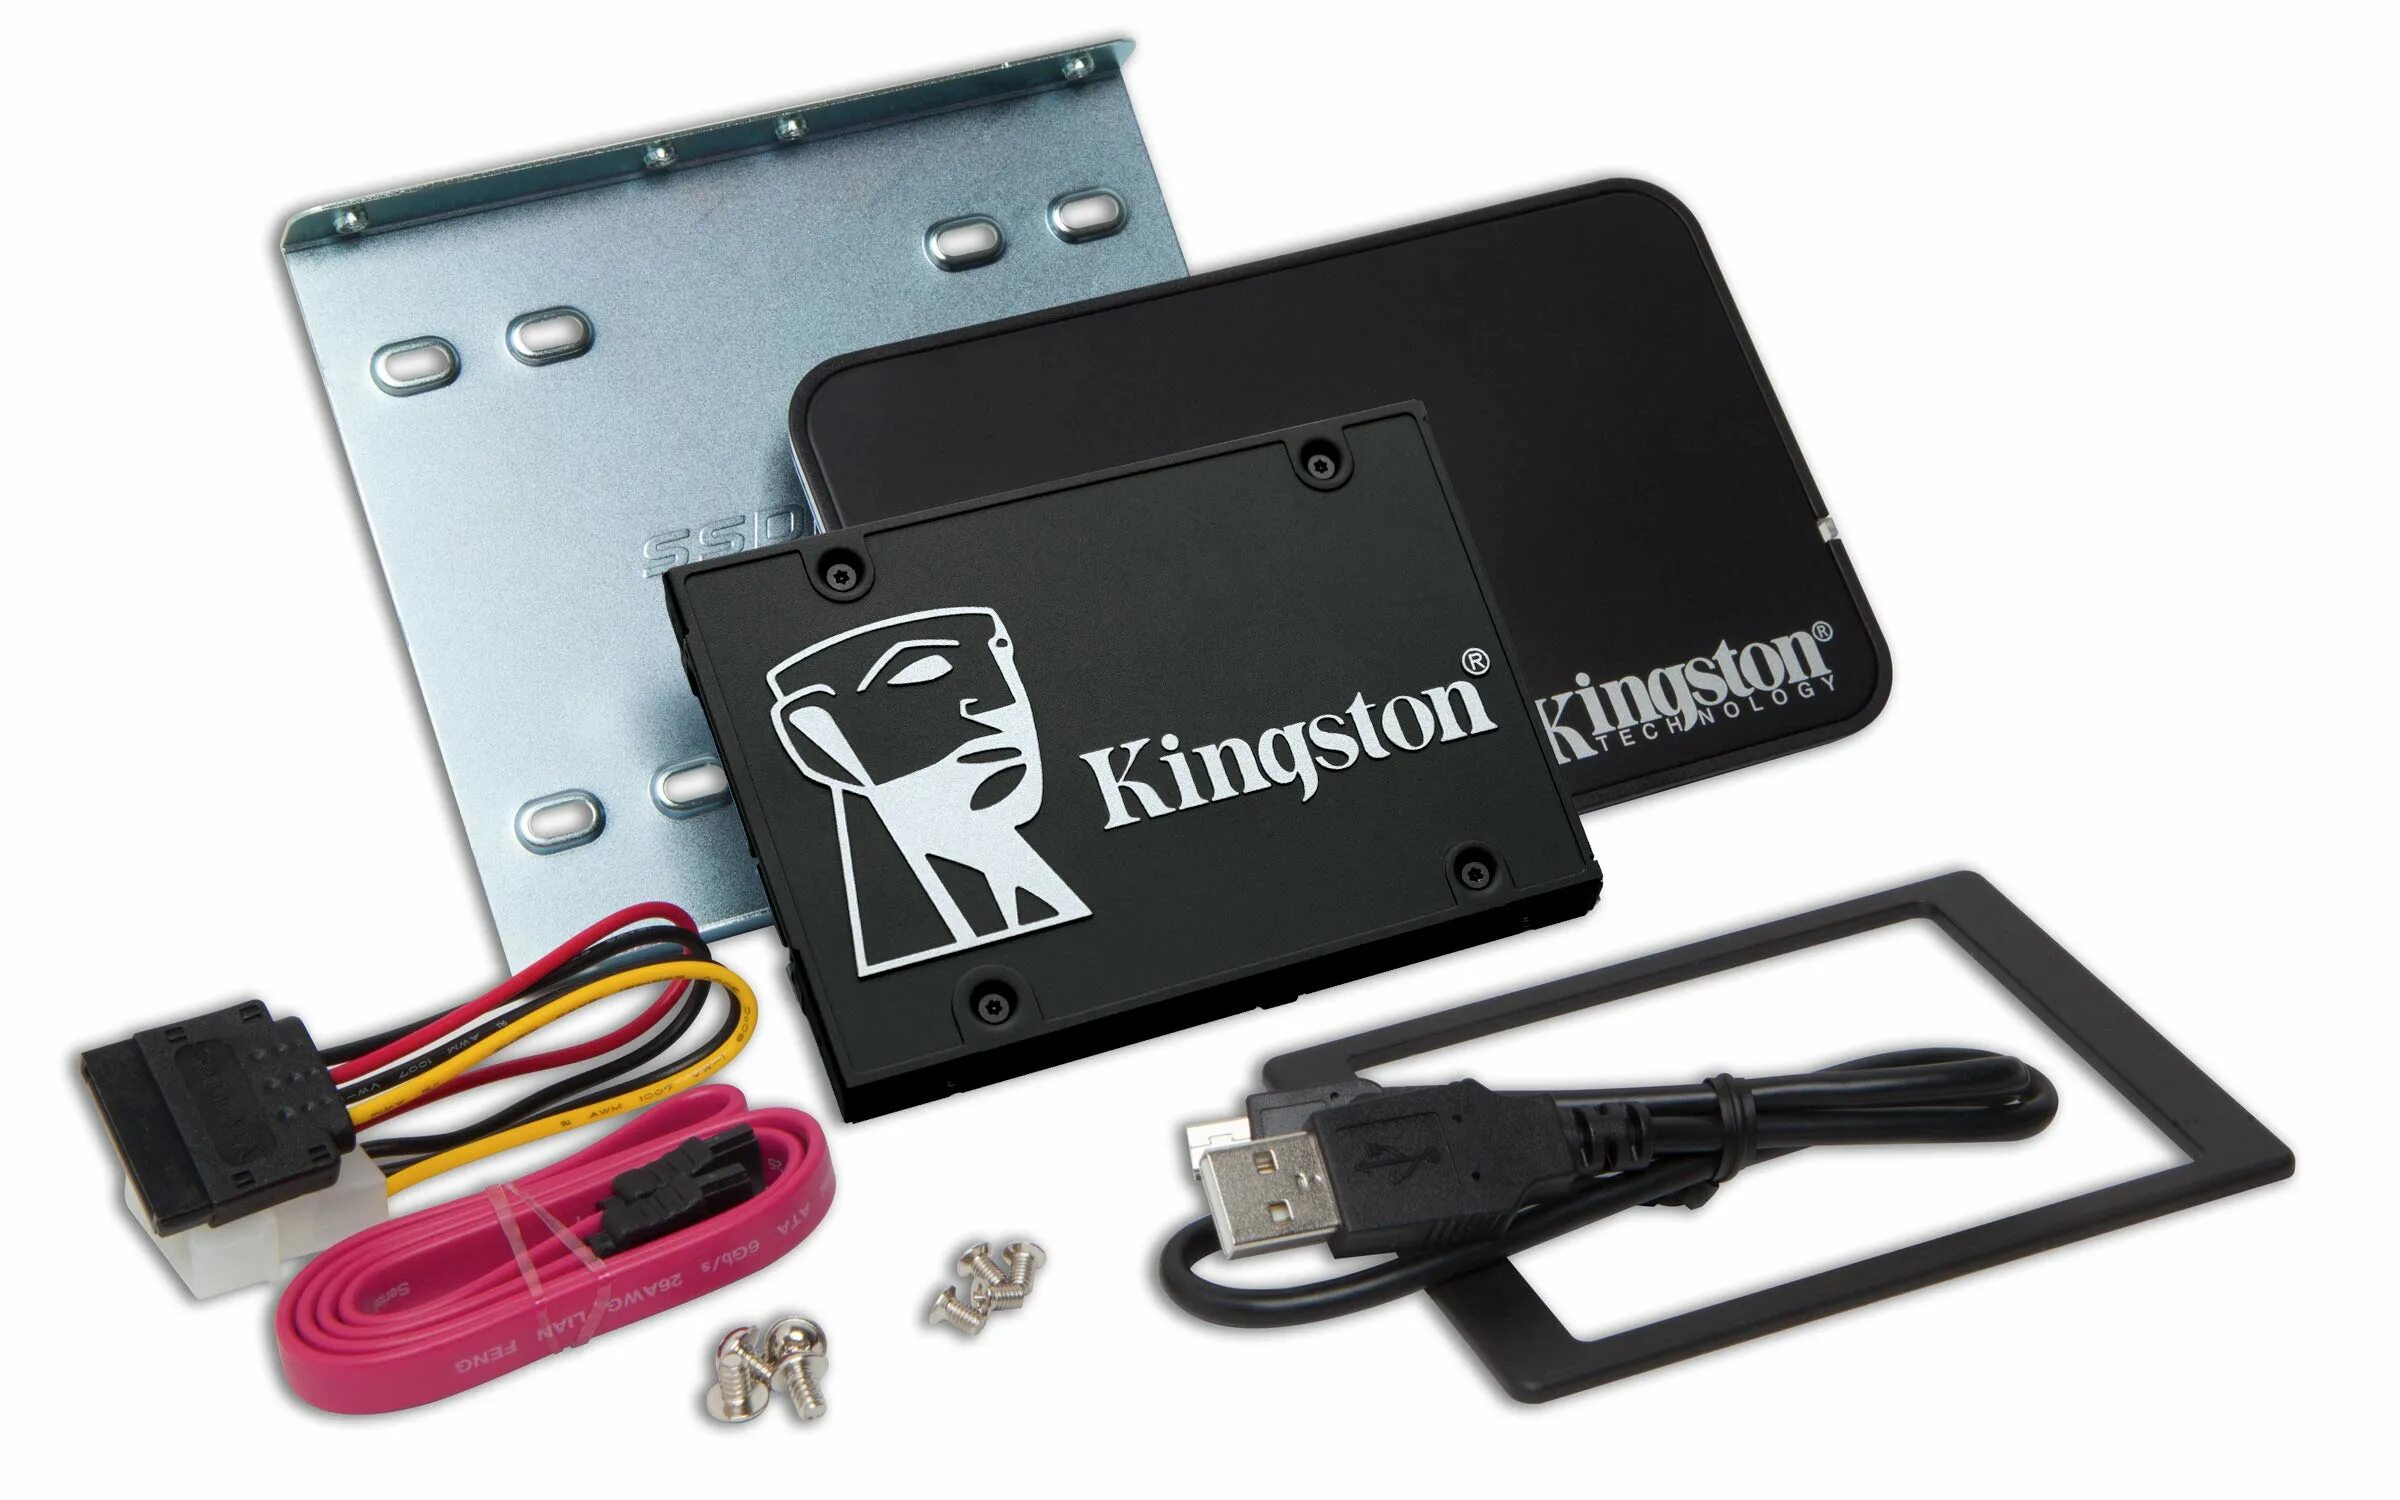 Ssd накопитель емкость. Ссд накопитель Кингстон. Kingston kc600 512gb. Kingston kc600 1tb. SSD Kingston kc600 512gb SATA.